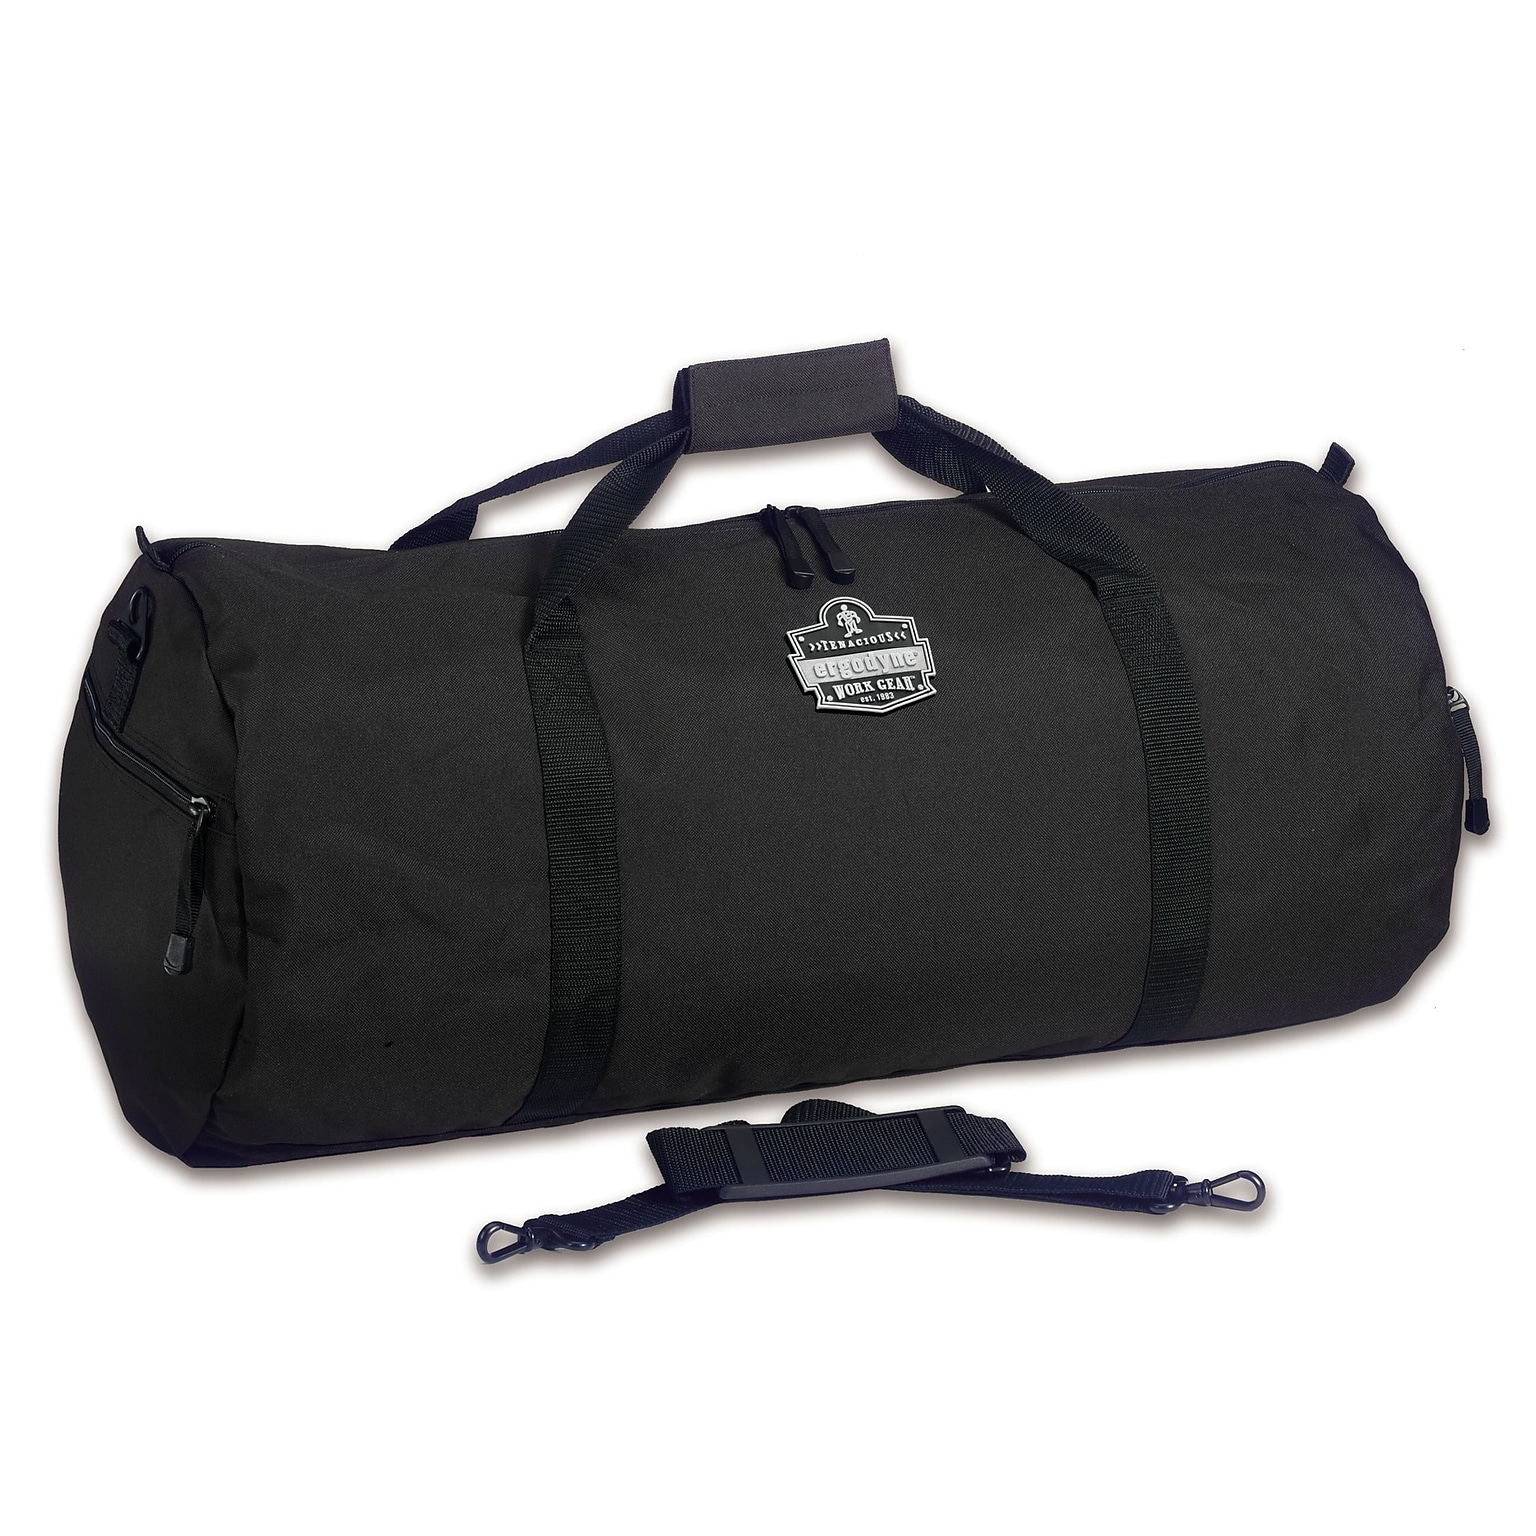 Ergodyne Arsenal 12 Polyester General Duty Duffel Bag, Black (13320)